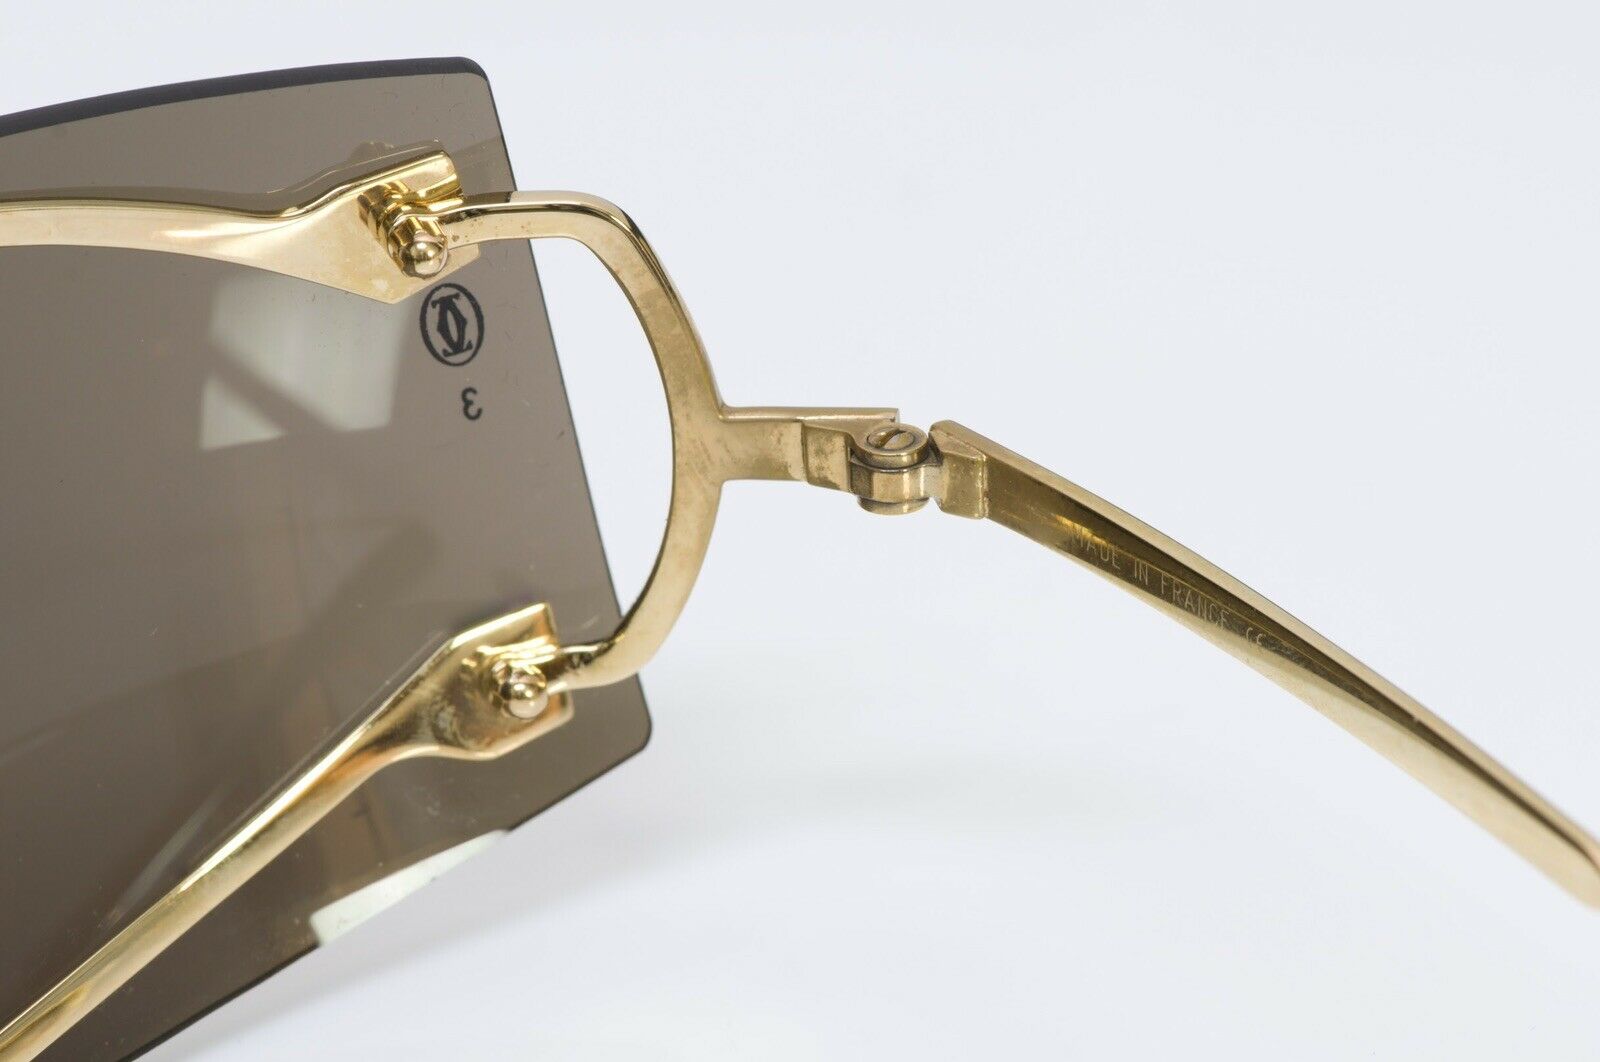 Cartier Paris Gold Plated Men’s Sunglasses